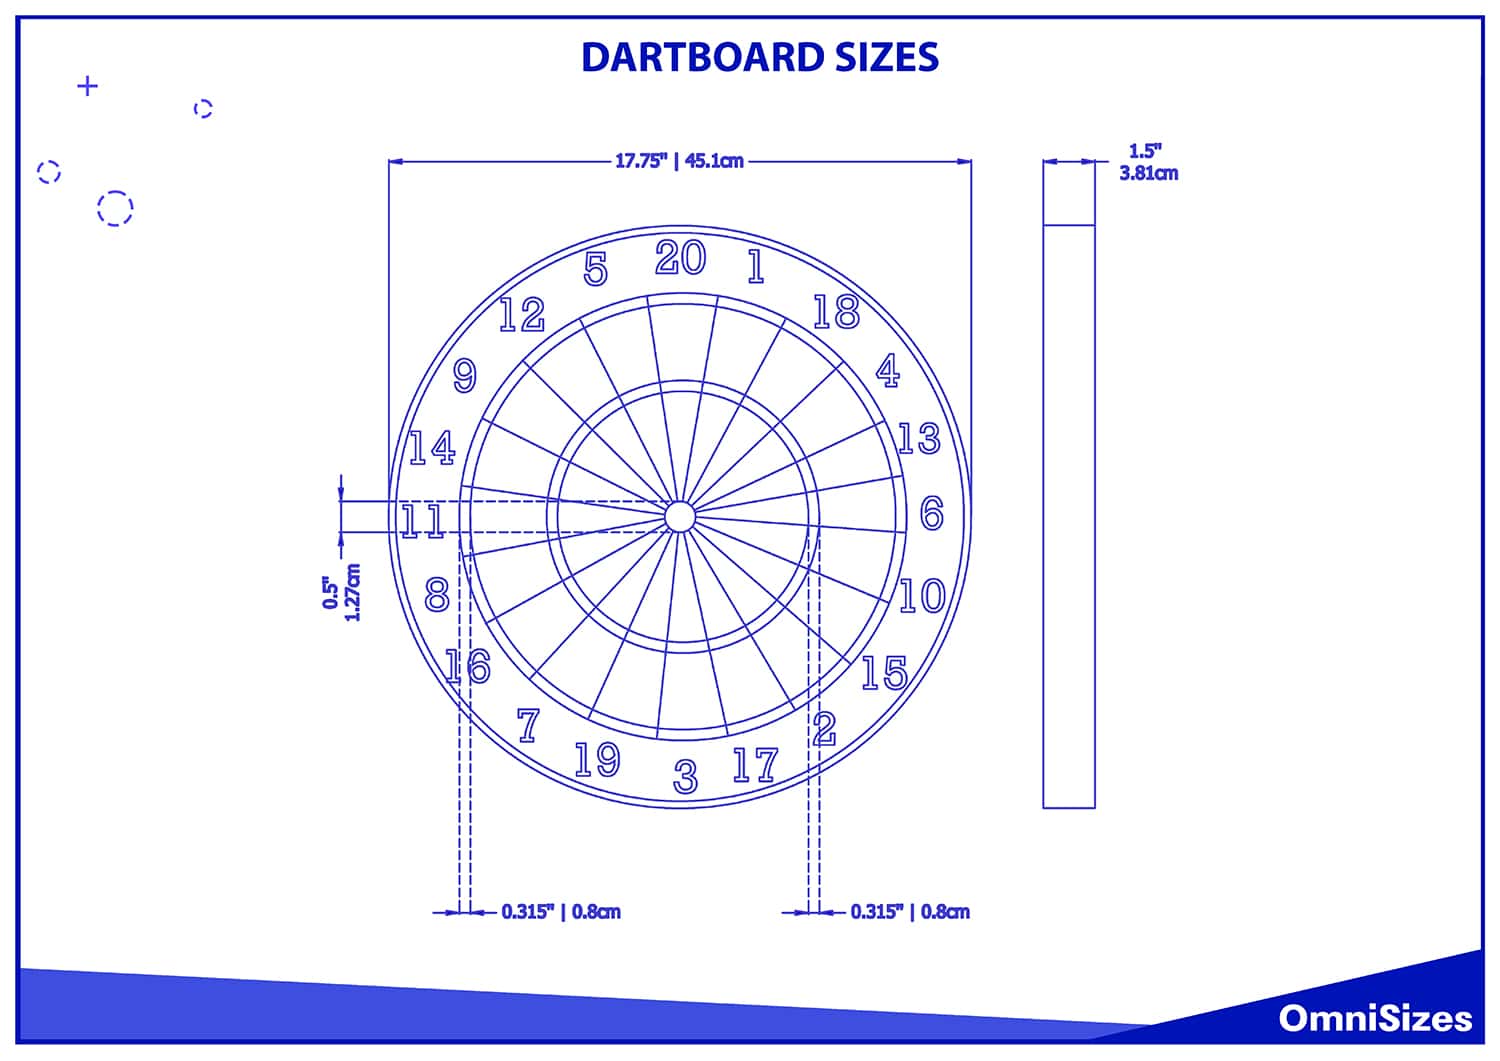 Dartboard sizes